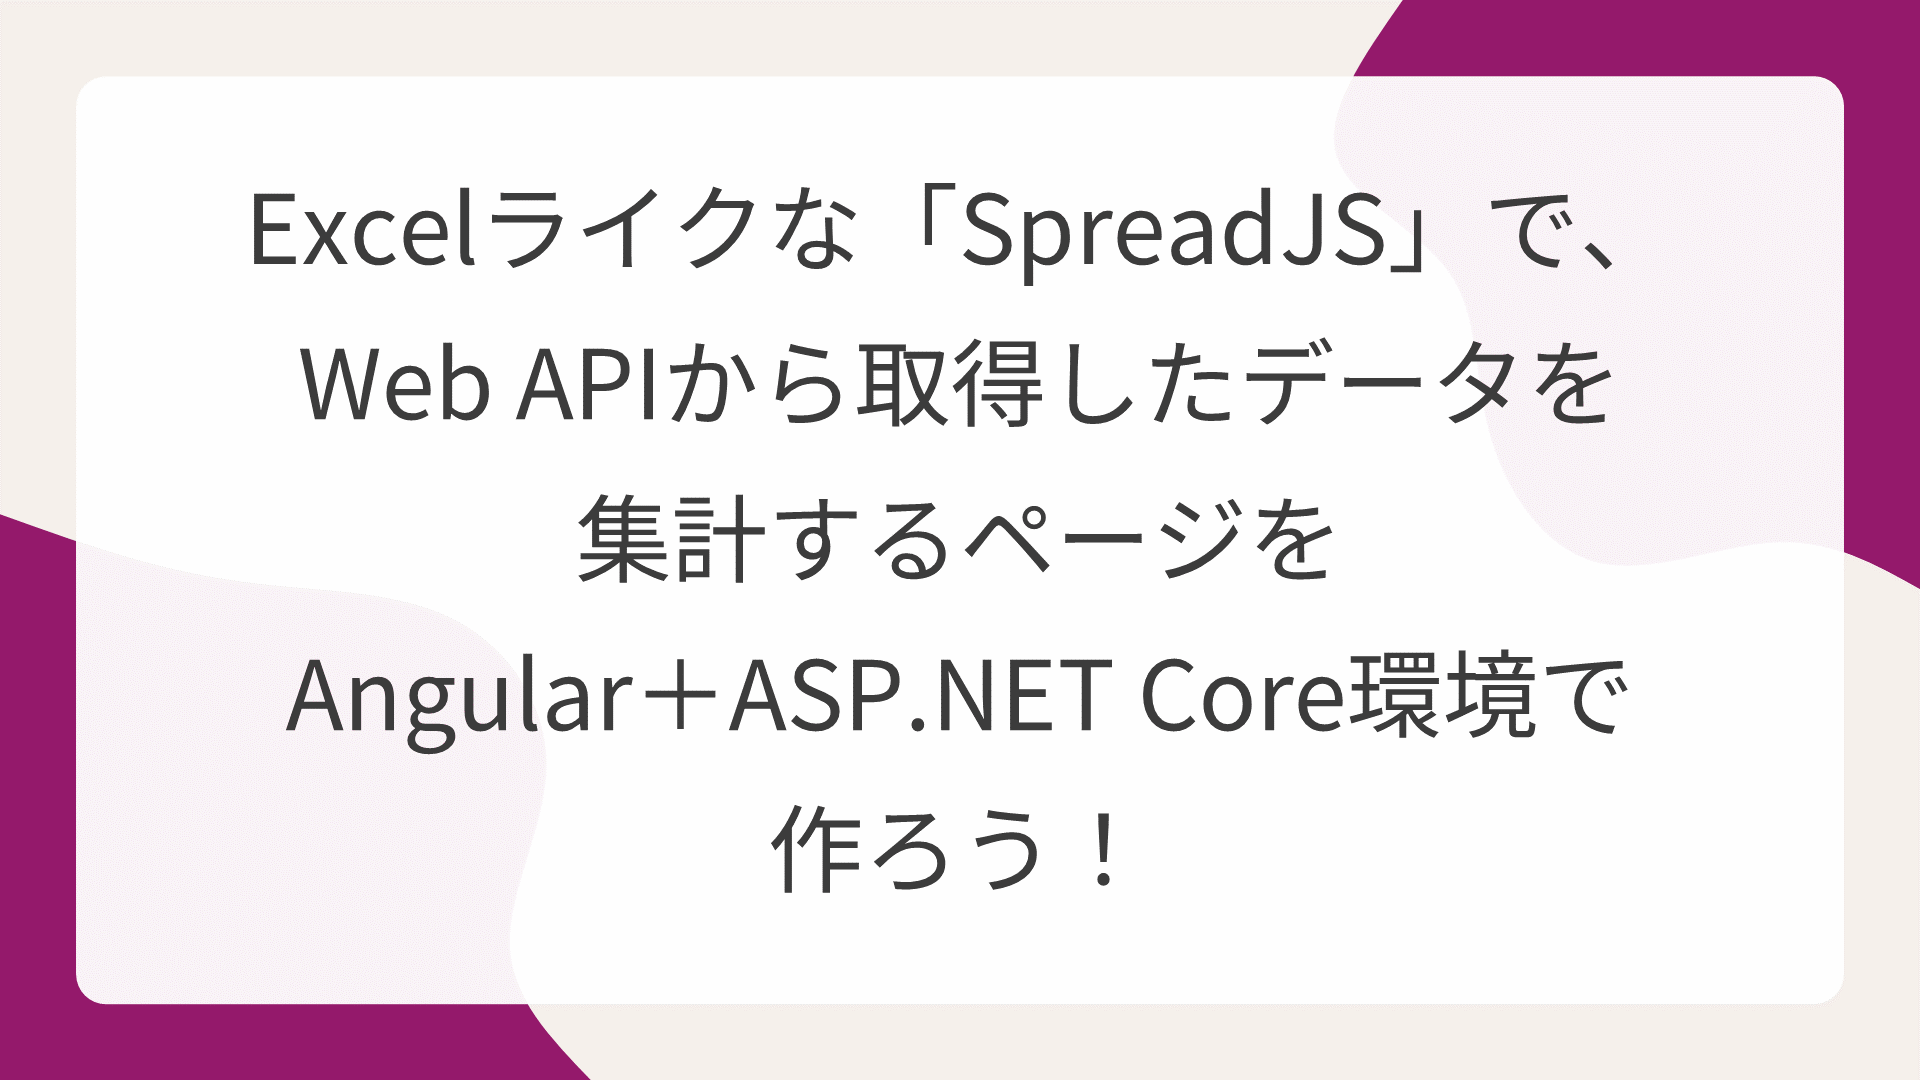 Excelライクな「SpreadJS」で、Web APIから取得したデータを集計するページをAngular＋ASP.NET Core環境で作ろう！